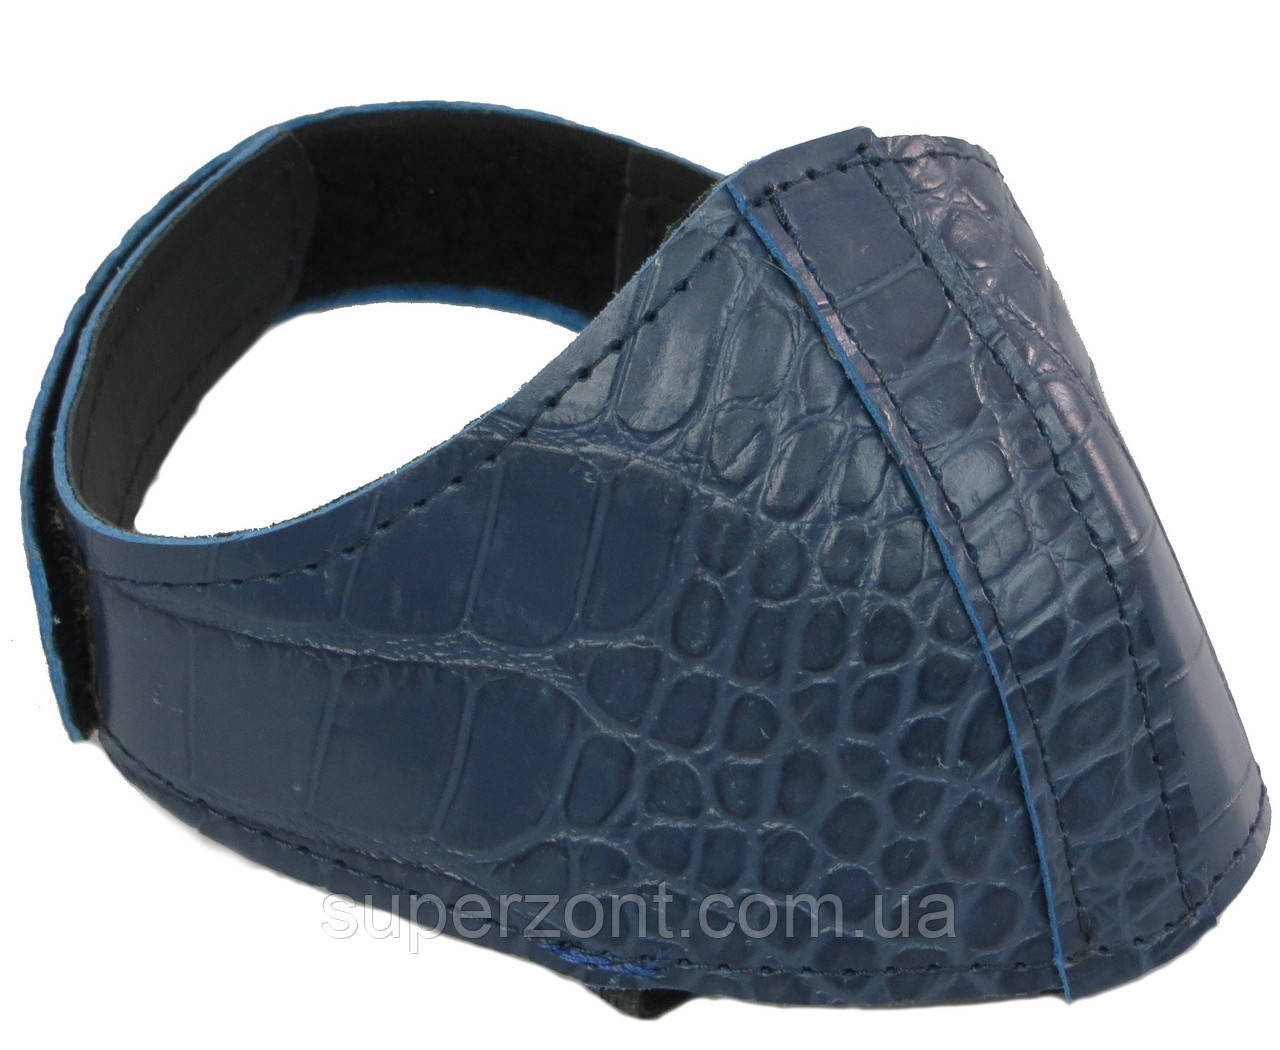 Автопятка кожаная для женской обуви синяя под рептилию 608835-9